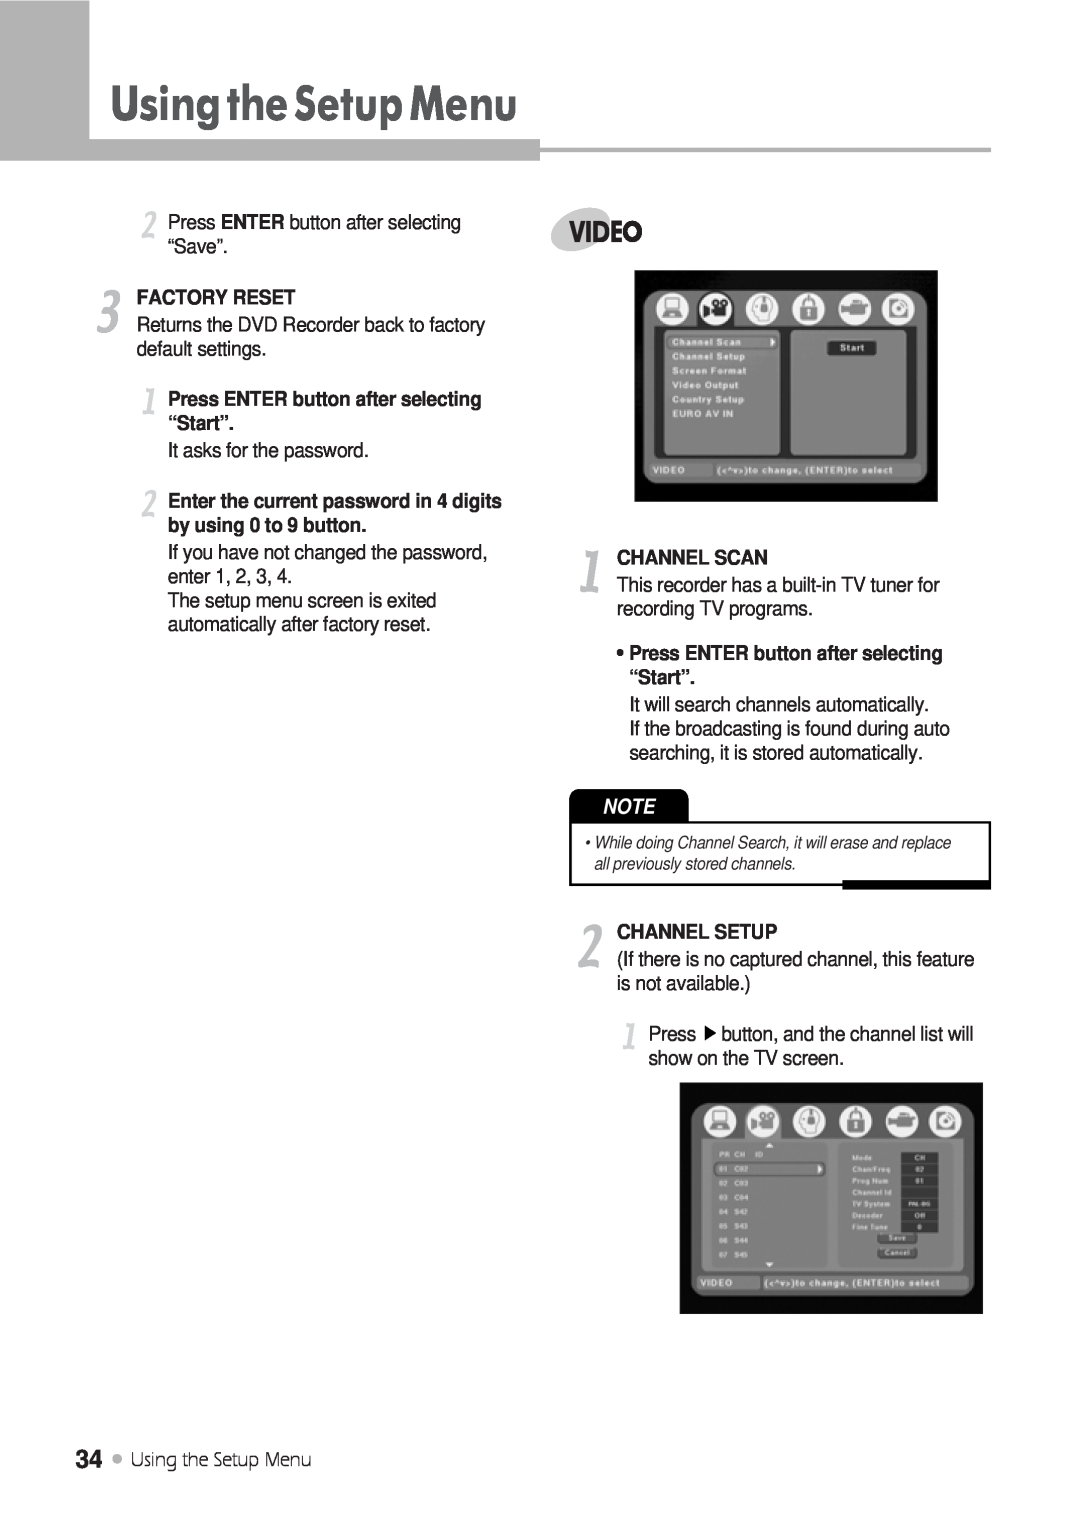 Kodak DRHD-120 manual UsingtheSetupMenu, Video, Factory Reset, Press ENTER button after selecting “Start”, Channel Scan 